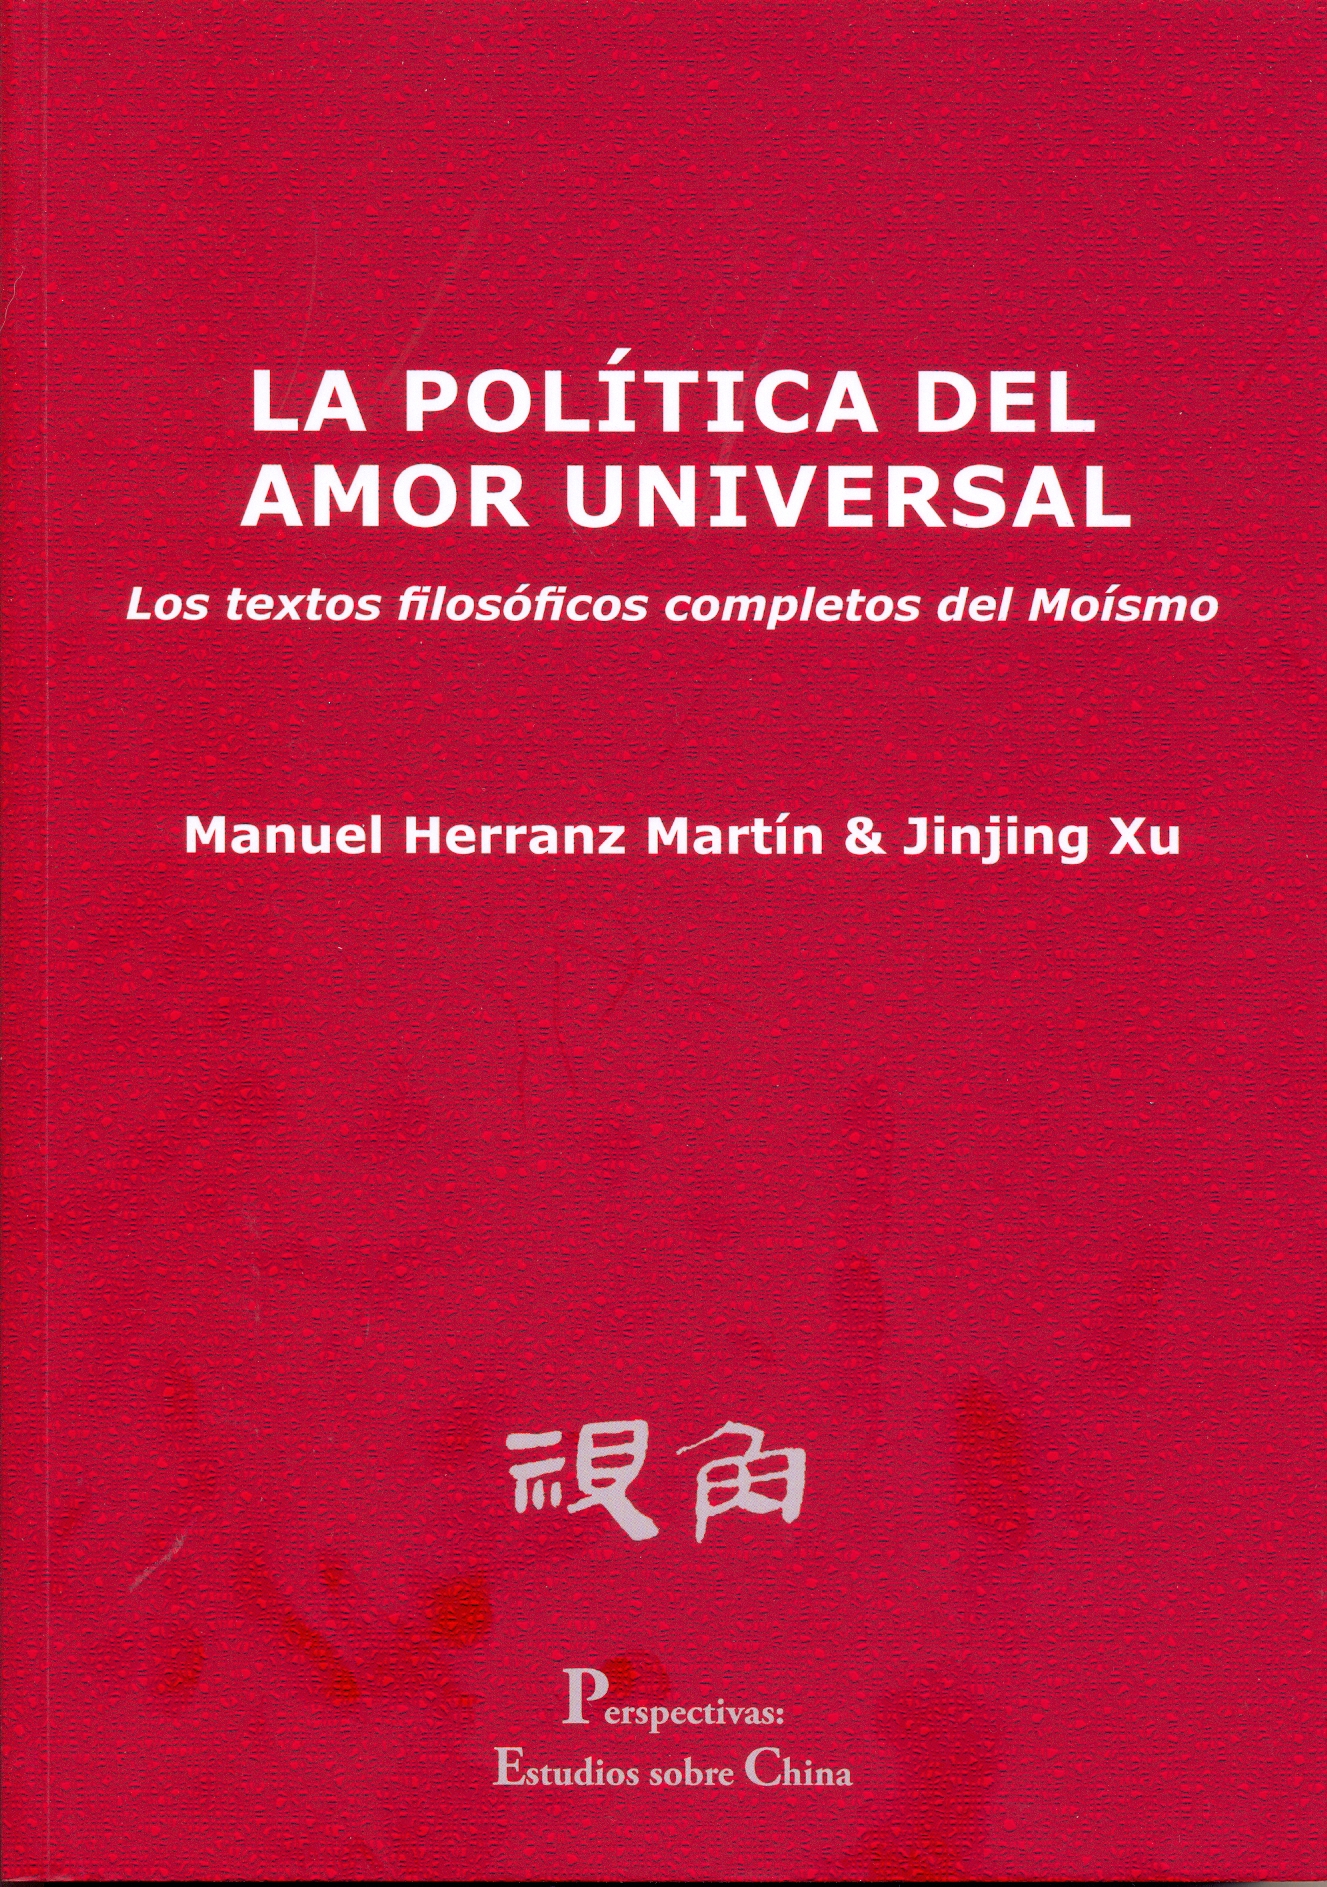 Imagen de portada del libro La política del amor universal